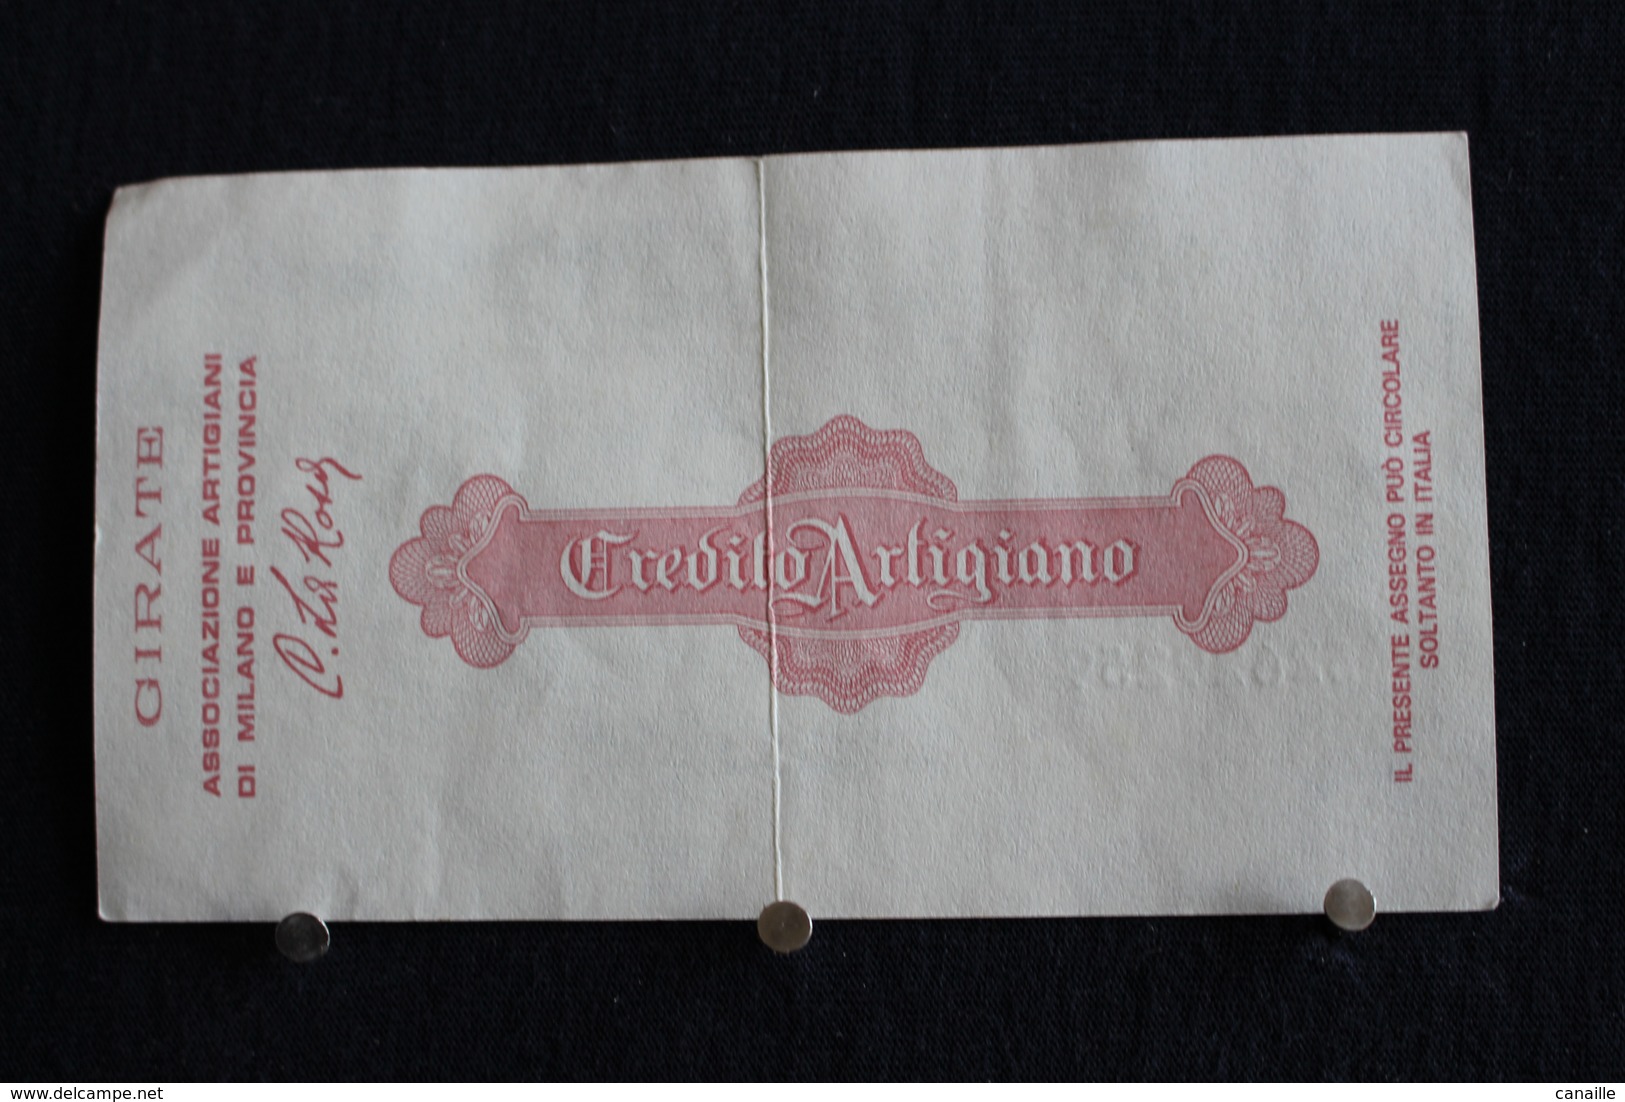 11 / Italie / 1946: Royaume / Biglietti Di Stato - Il Credito Artigiano Milano 1/7/1977 - Vale 100 Lire - - 100 Liras